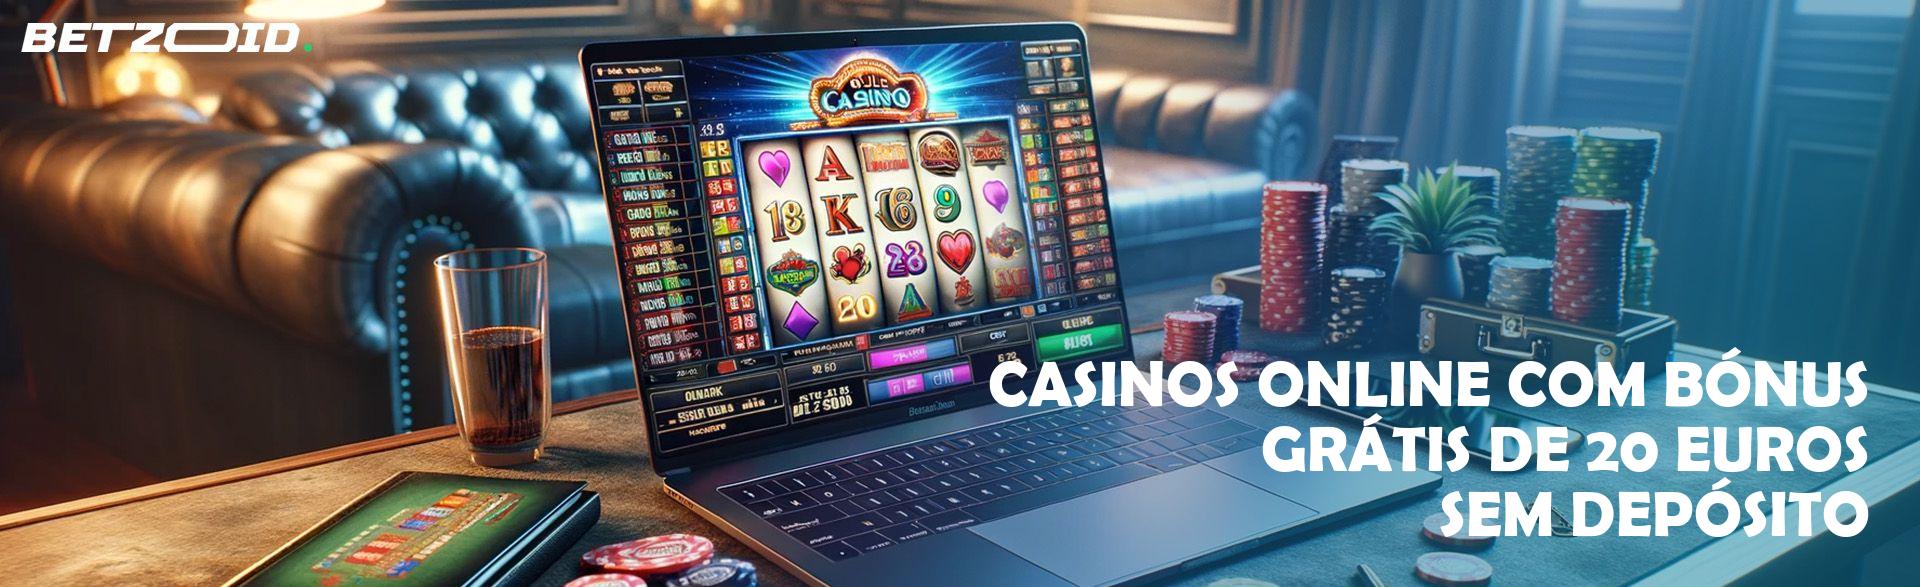 Casinos Online com Bónus Grátis de 20 Euros sem Depósito.